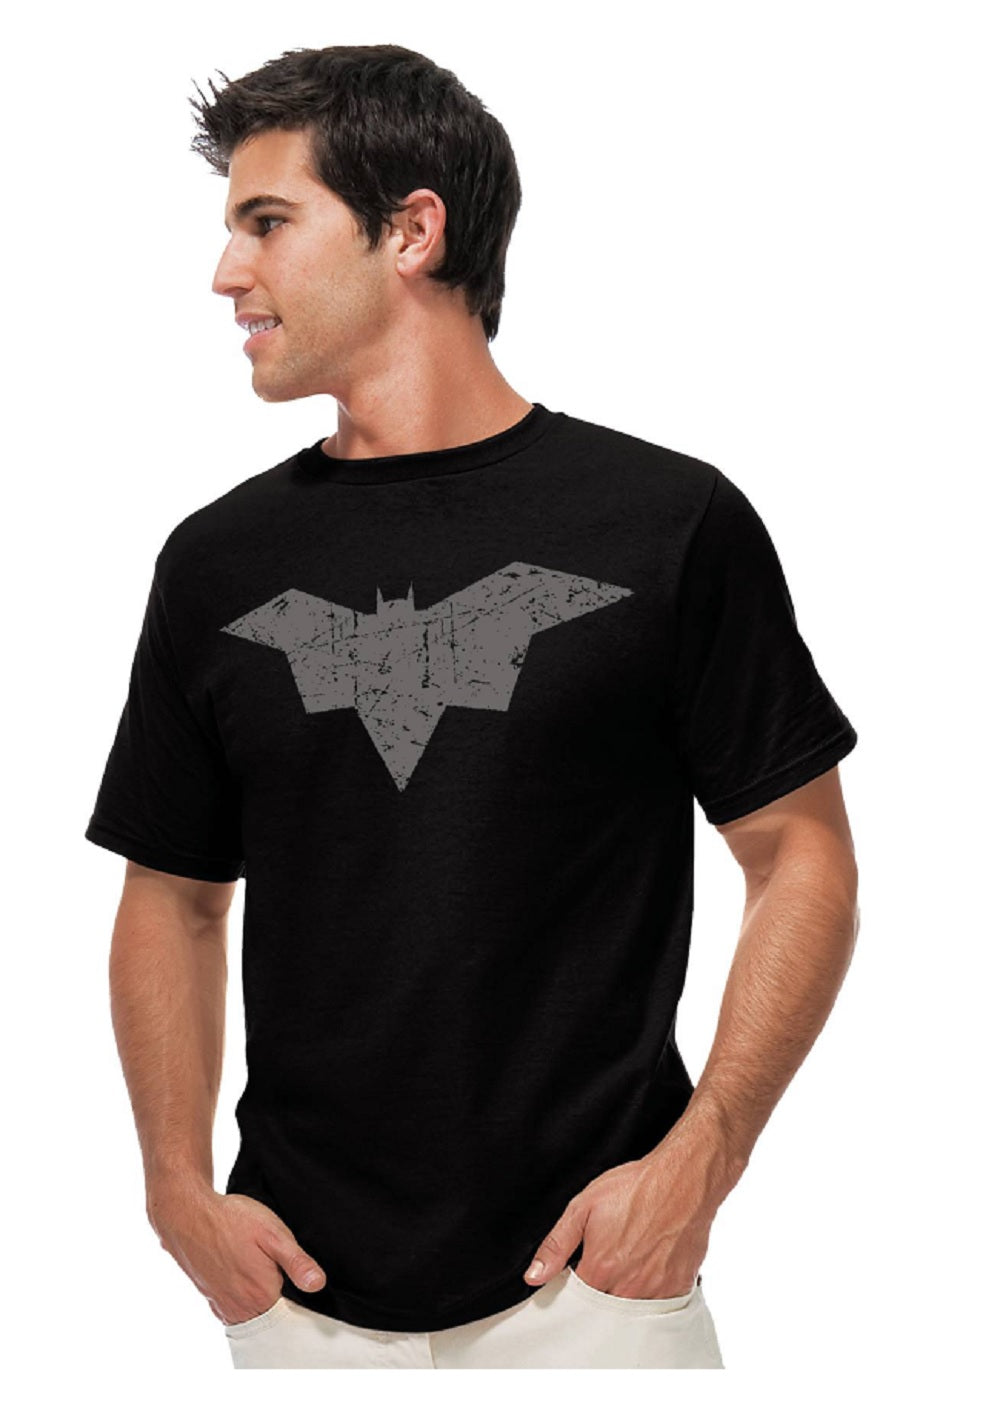 Batman Damned Bat Symbol DC Comics Adult T-Shirt